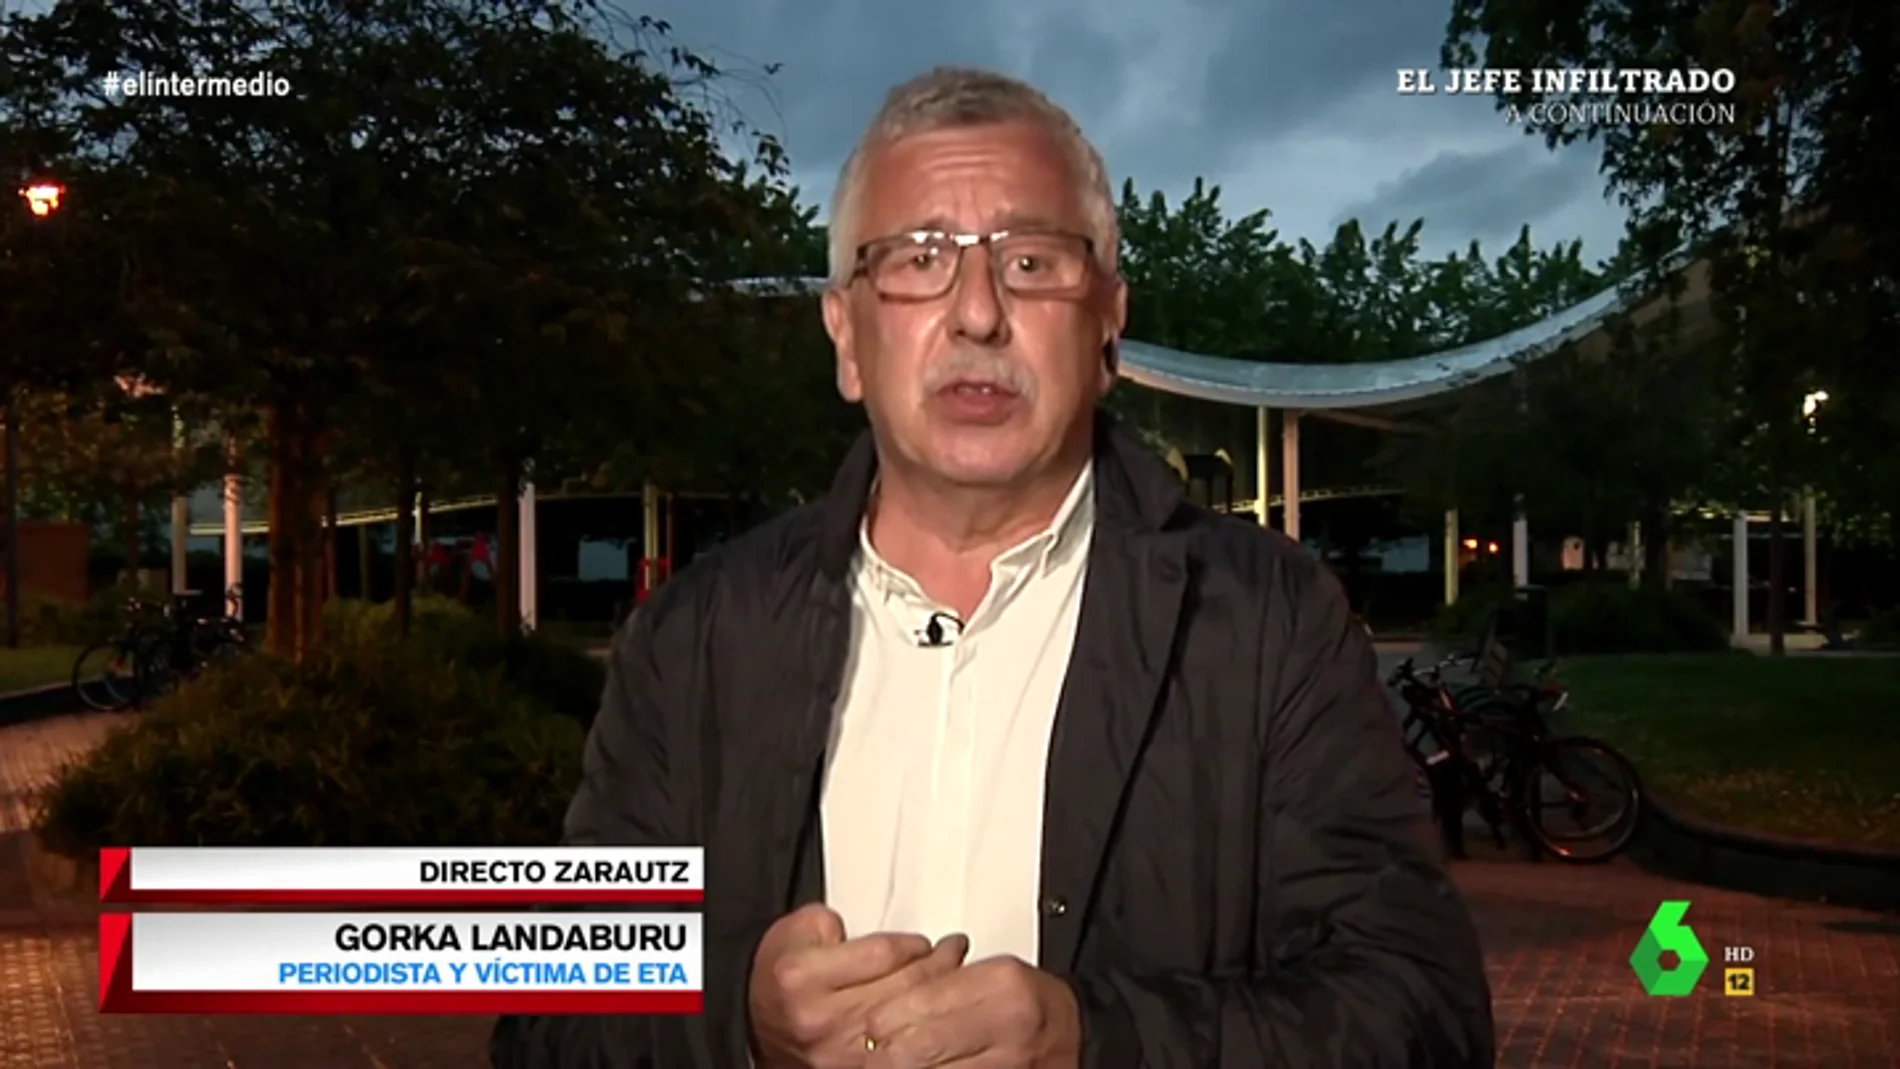 Gorka Landaburu, periodista y víctima de ETA: "Tienen que hacer autocrítica, y reconocer que matar no sirvió para nada"